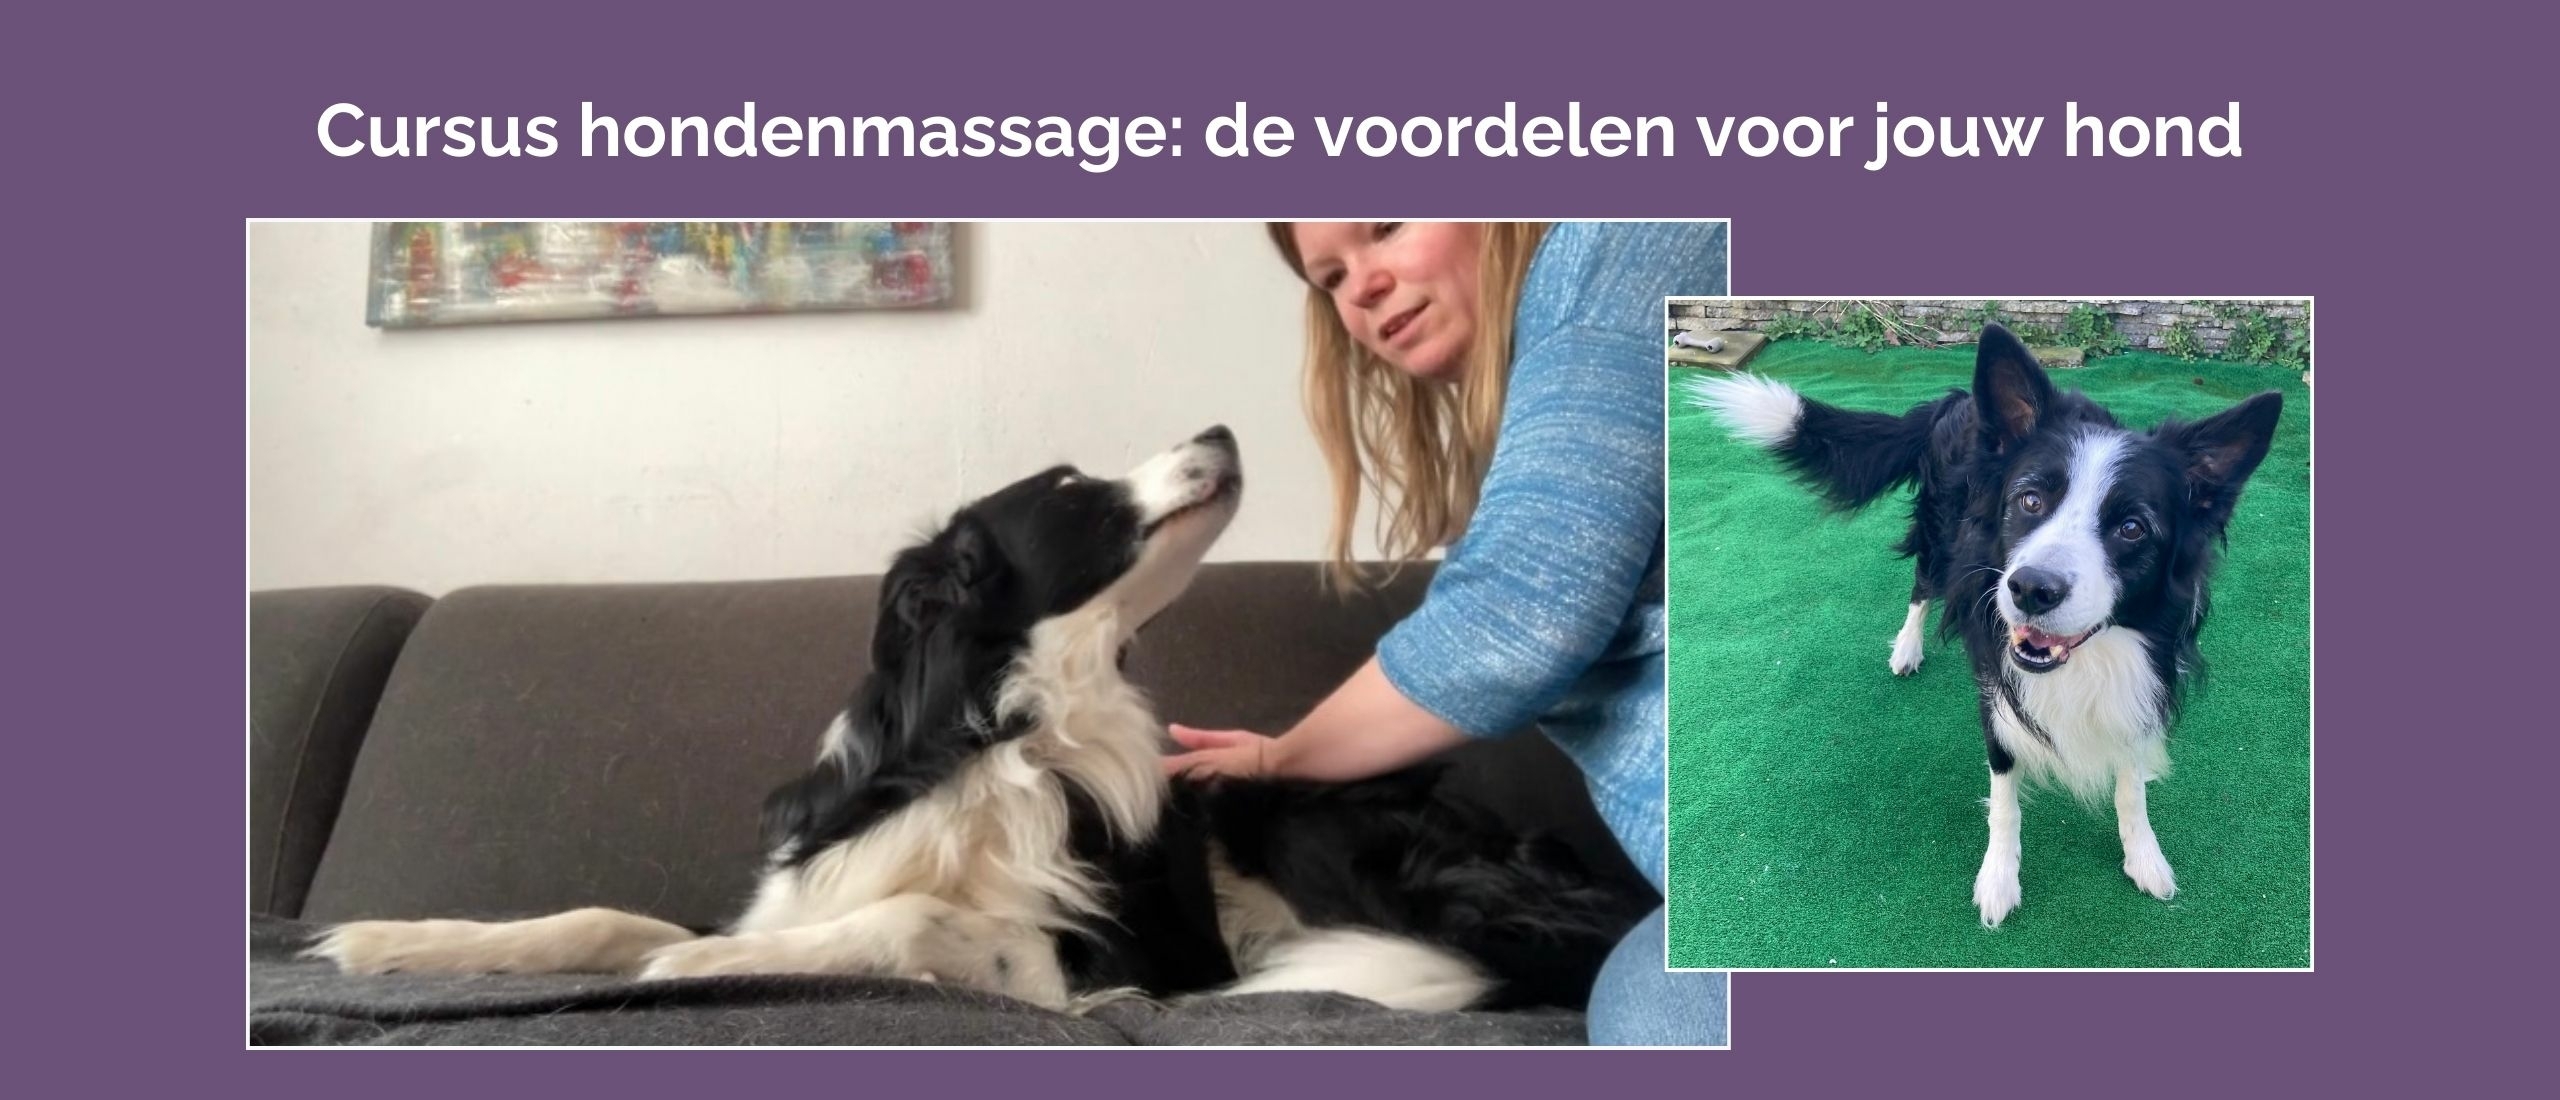 Laat jouw hond voordelen ervaren van een cursus hondenmassage